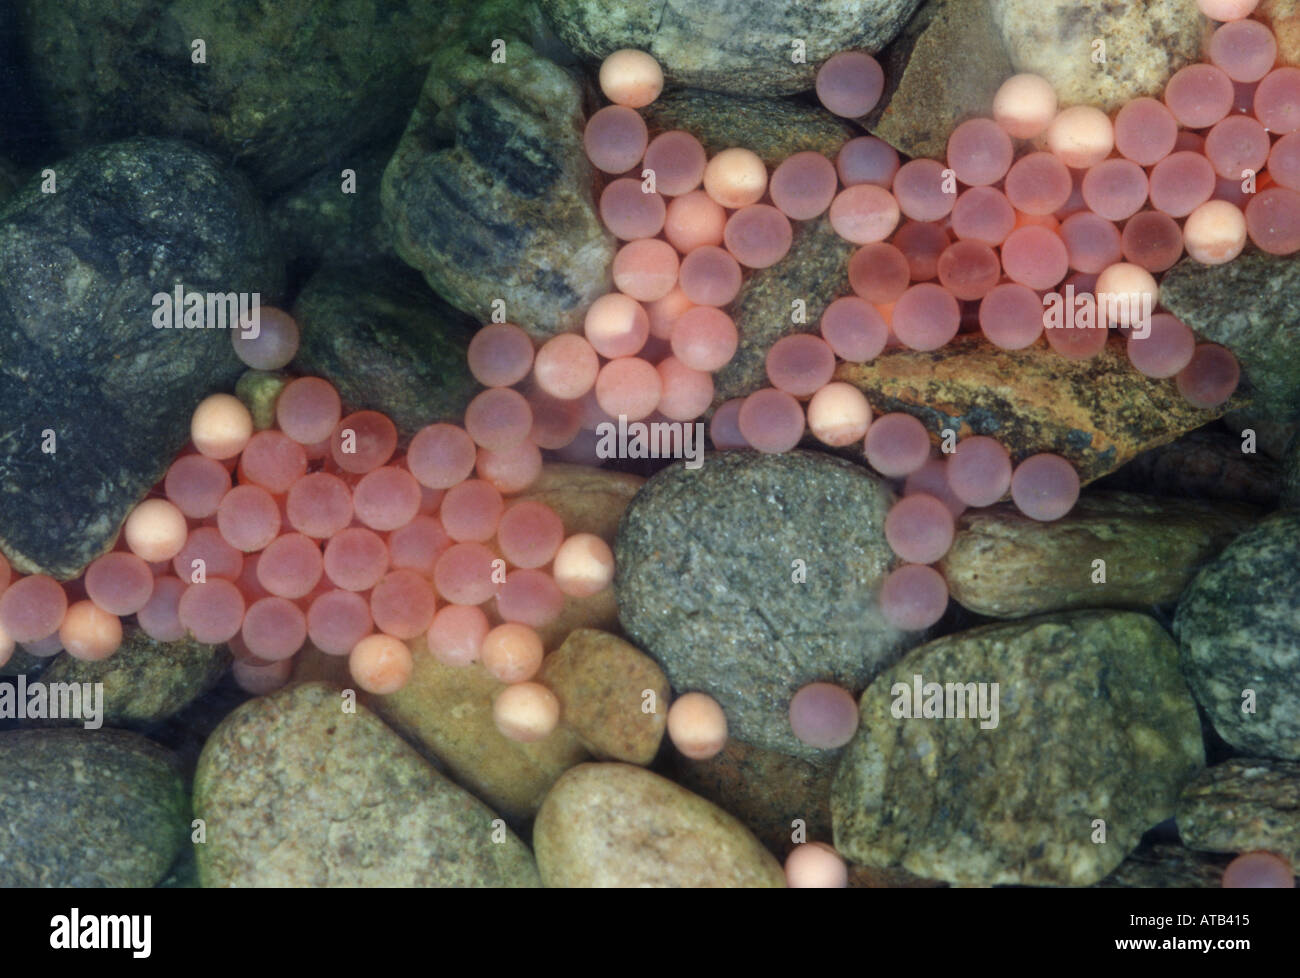 Sockeye salmon eggs Stock Photo - Alamy